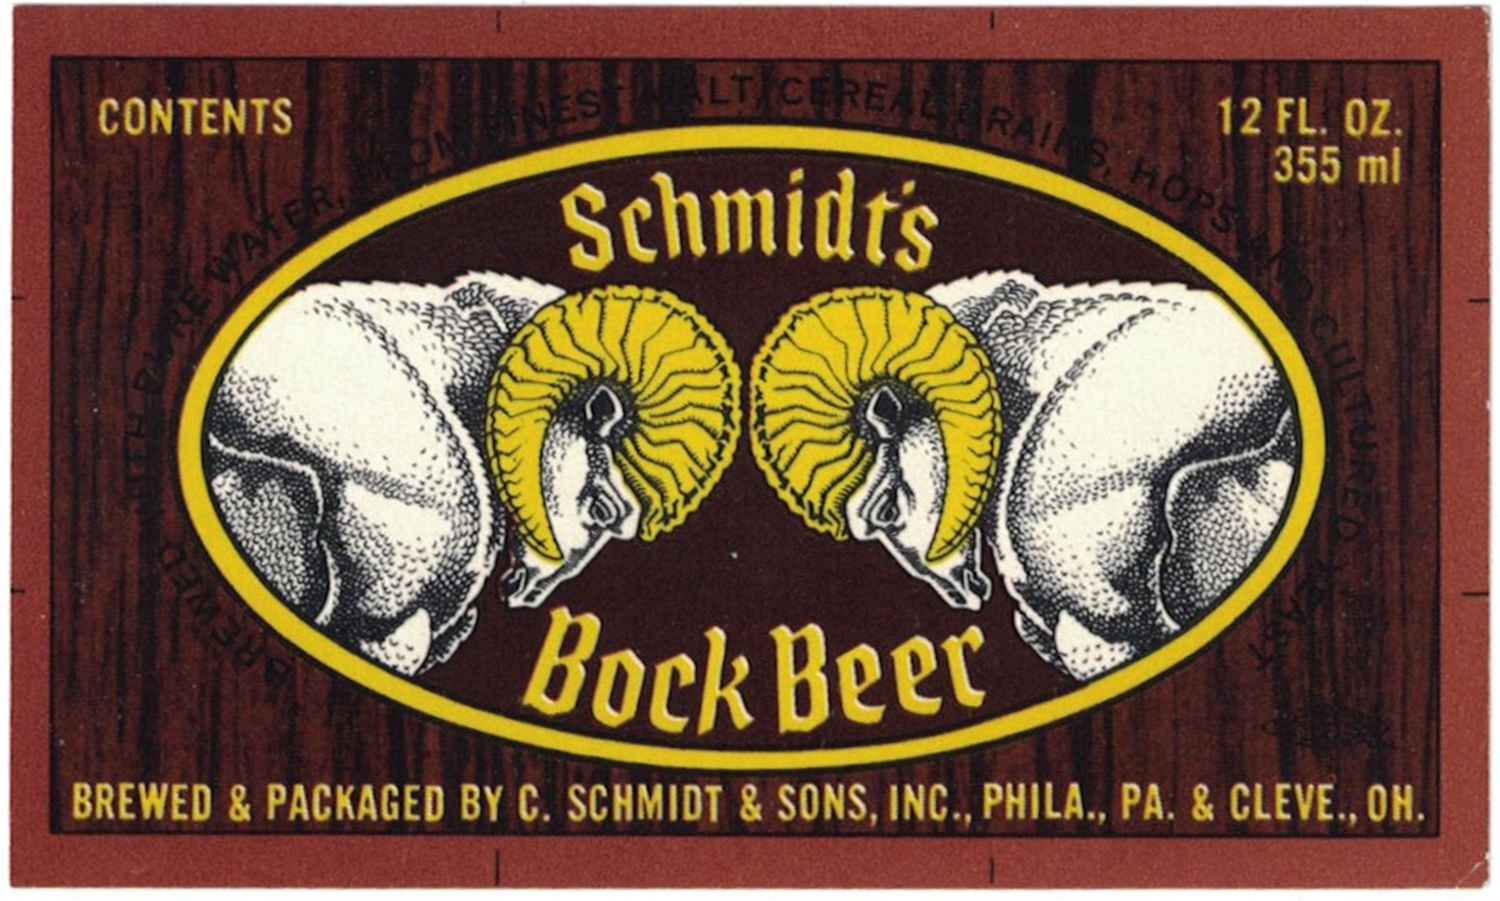 Schmidt's Bock Beer Label